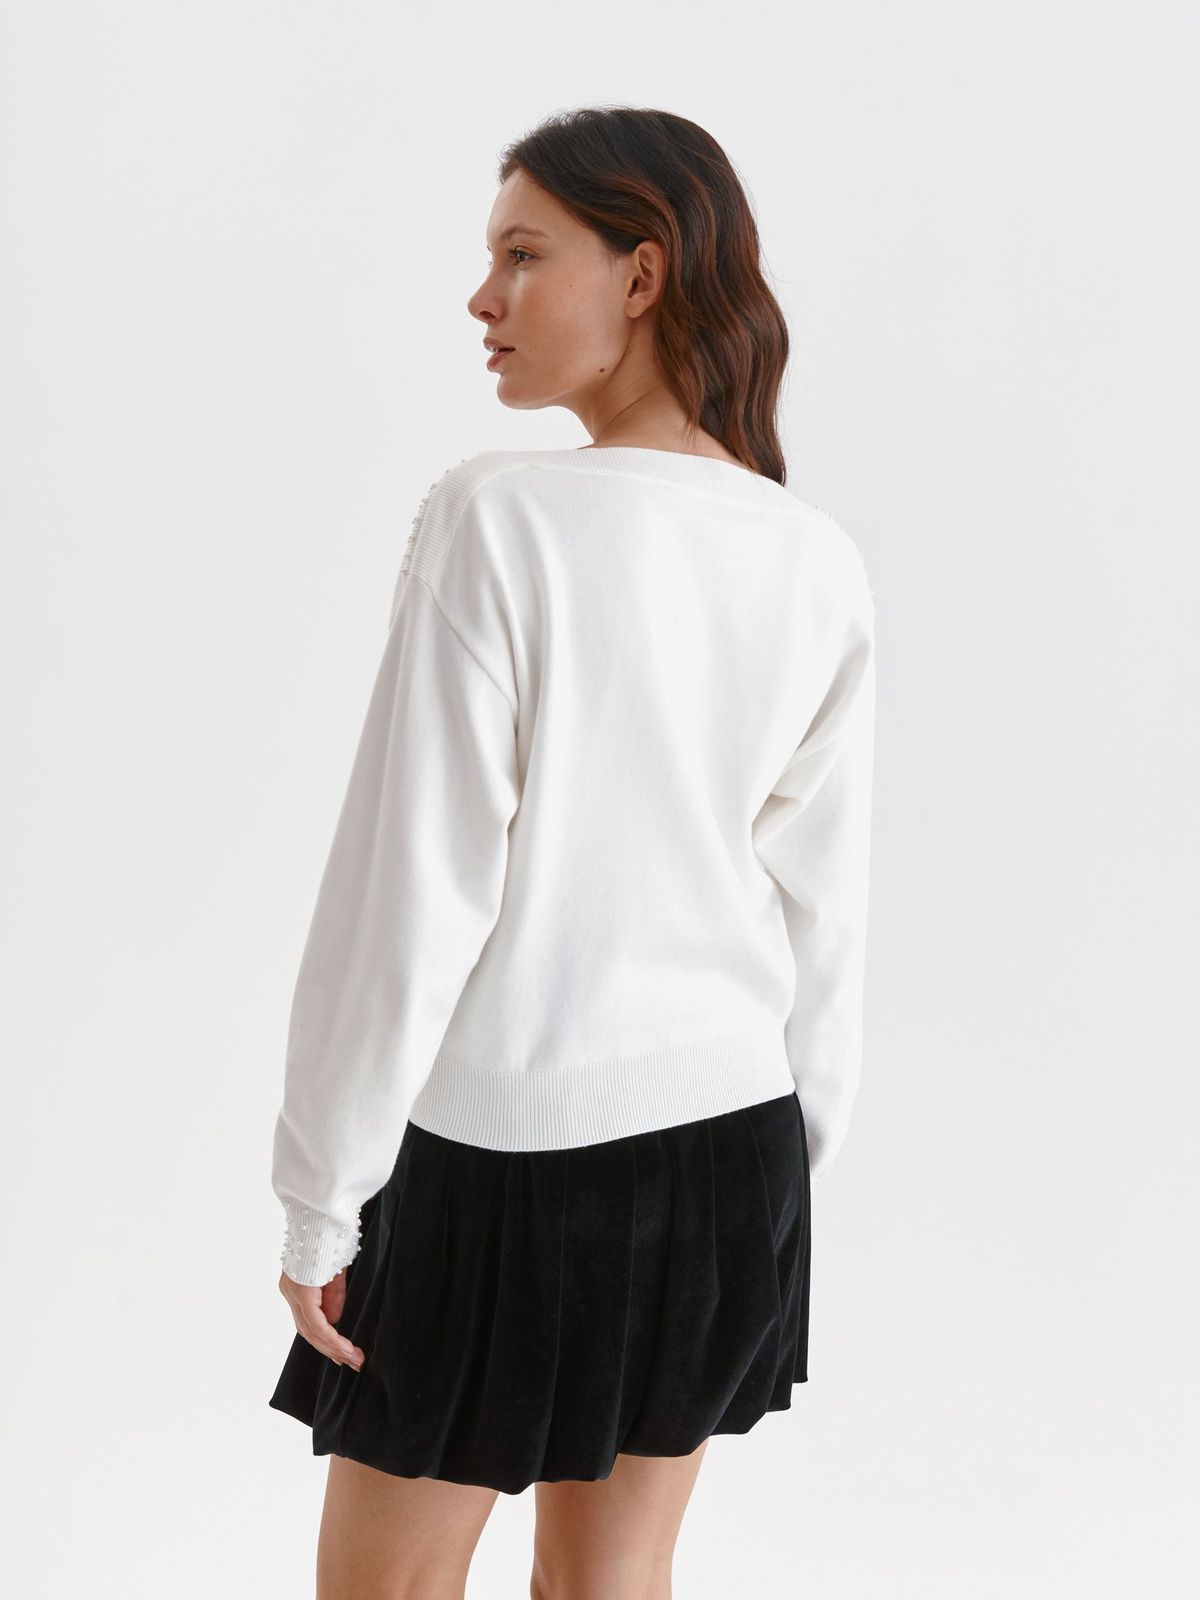 Pulover din tricot alb cu croi larg si aplicatii cu perle - Top Secret 3 - StarShinerS.ro